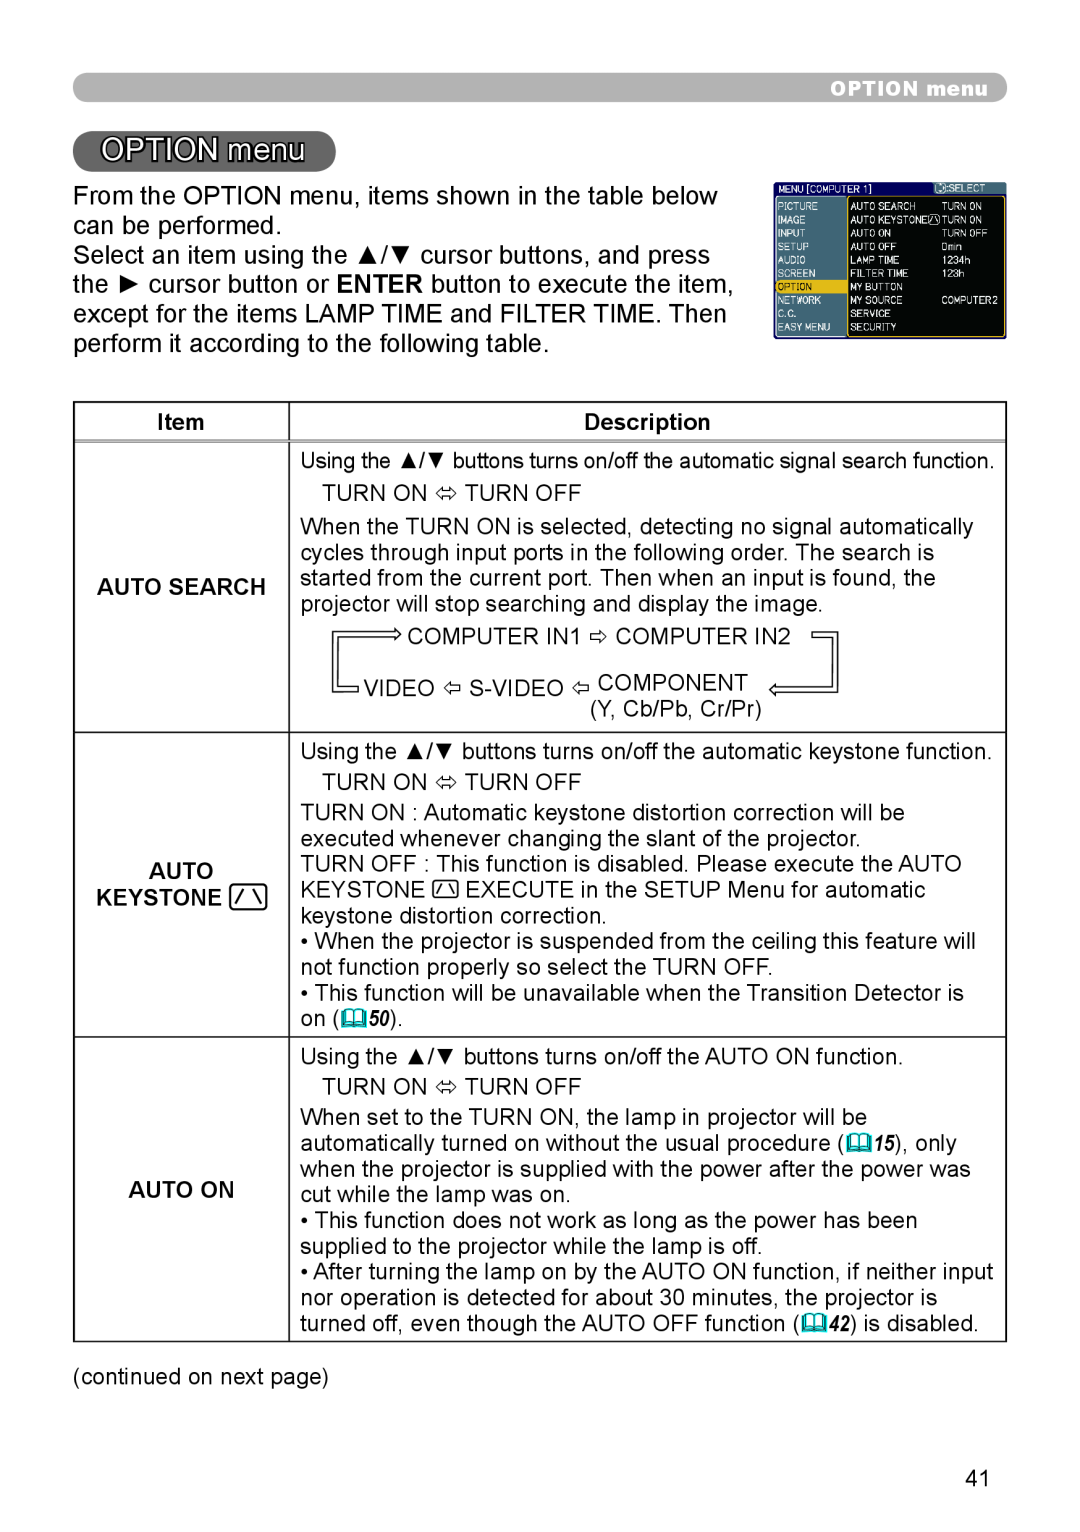 Hitachi CP-X306, CP-X206 user manual OPTION menu, Description, Auto Search, Keystone, Auto On 